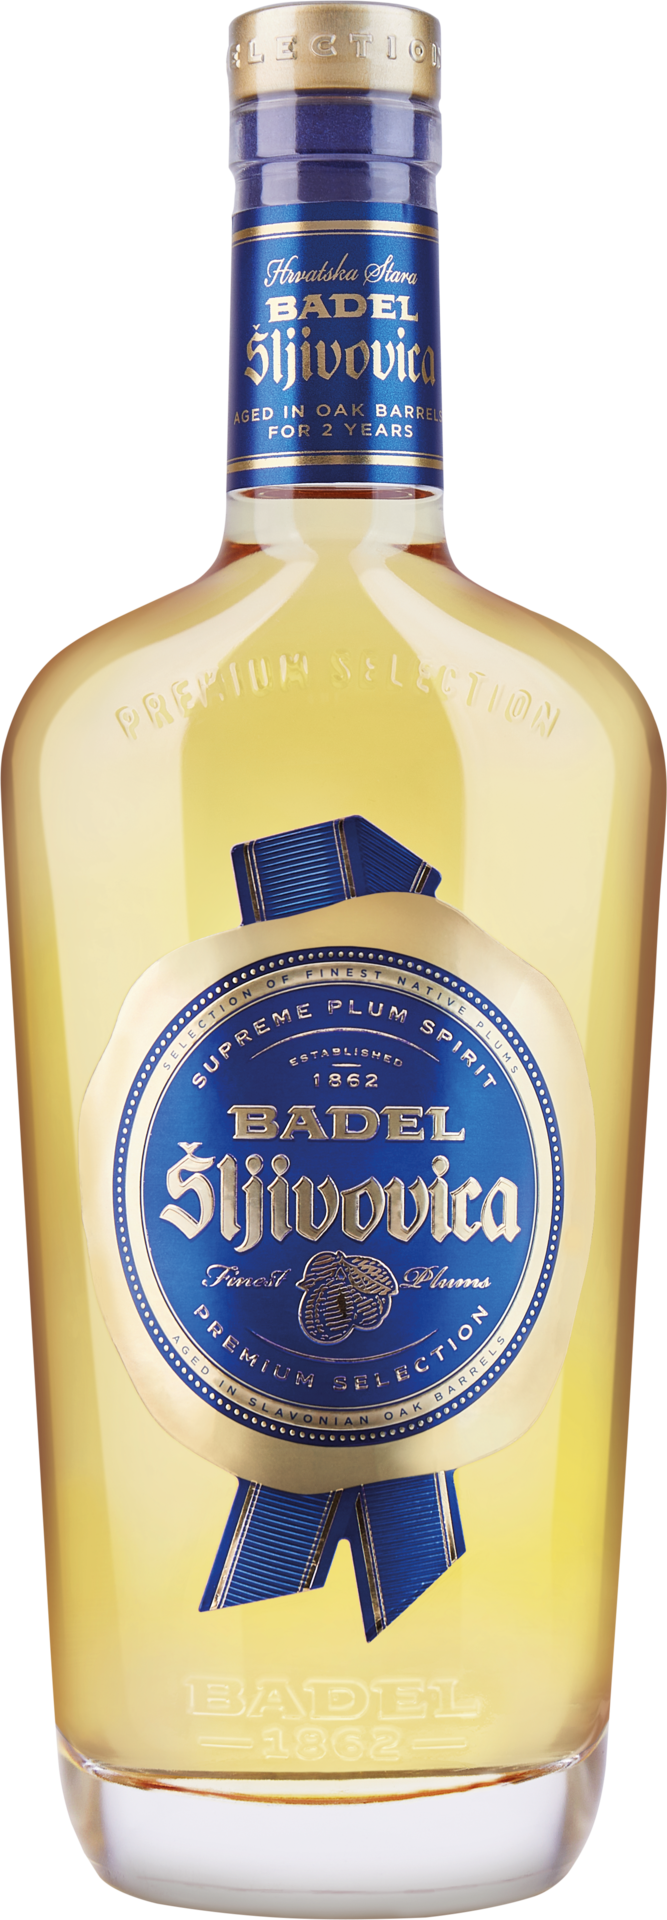 Badel Sljivovica Premium Selection GP 0,7 Liter